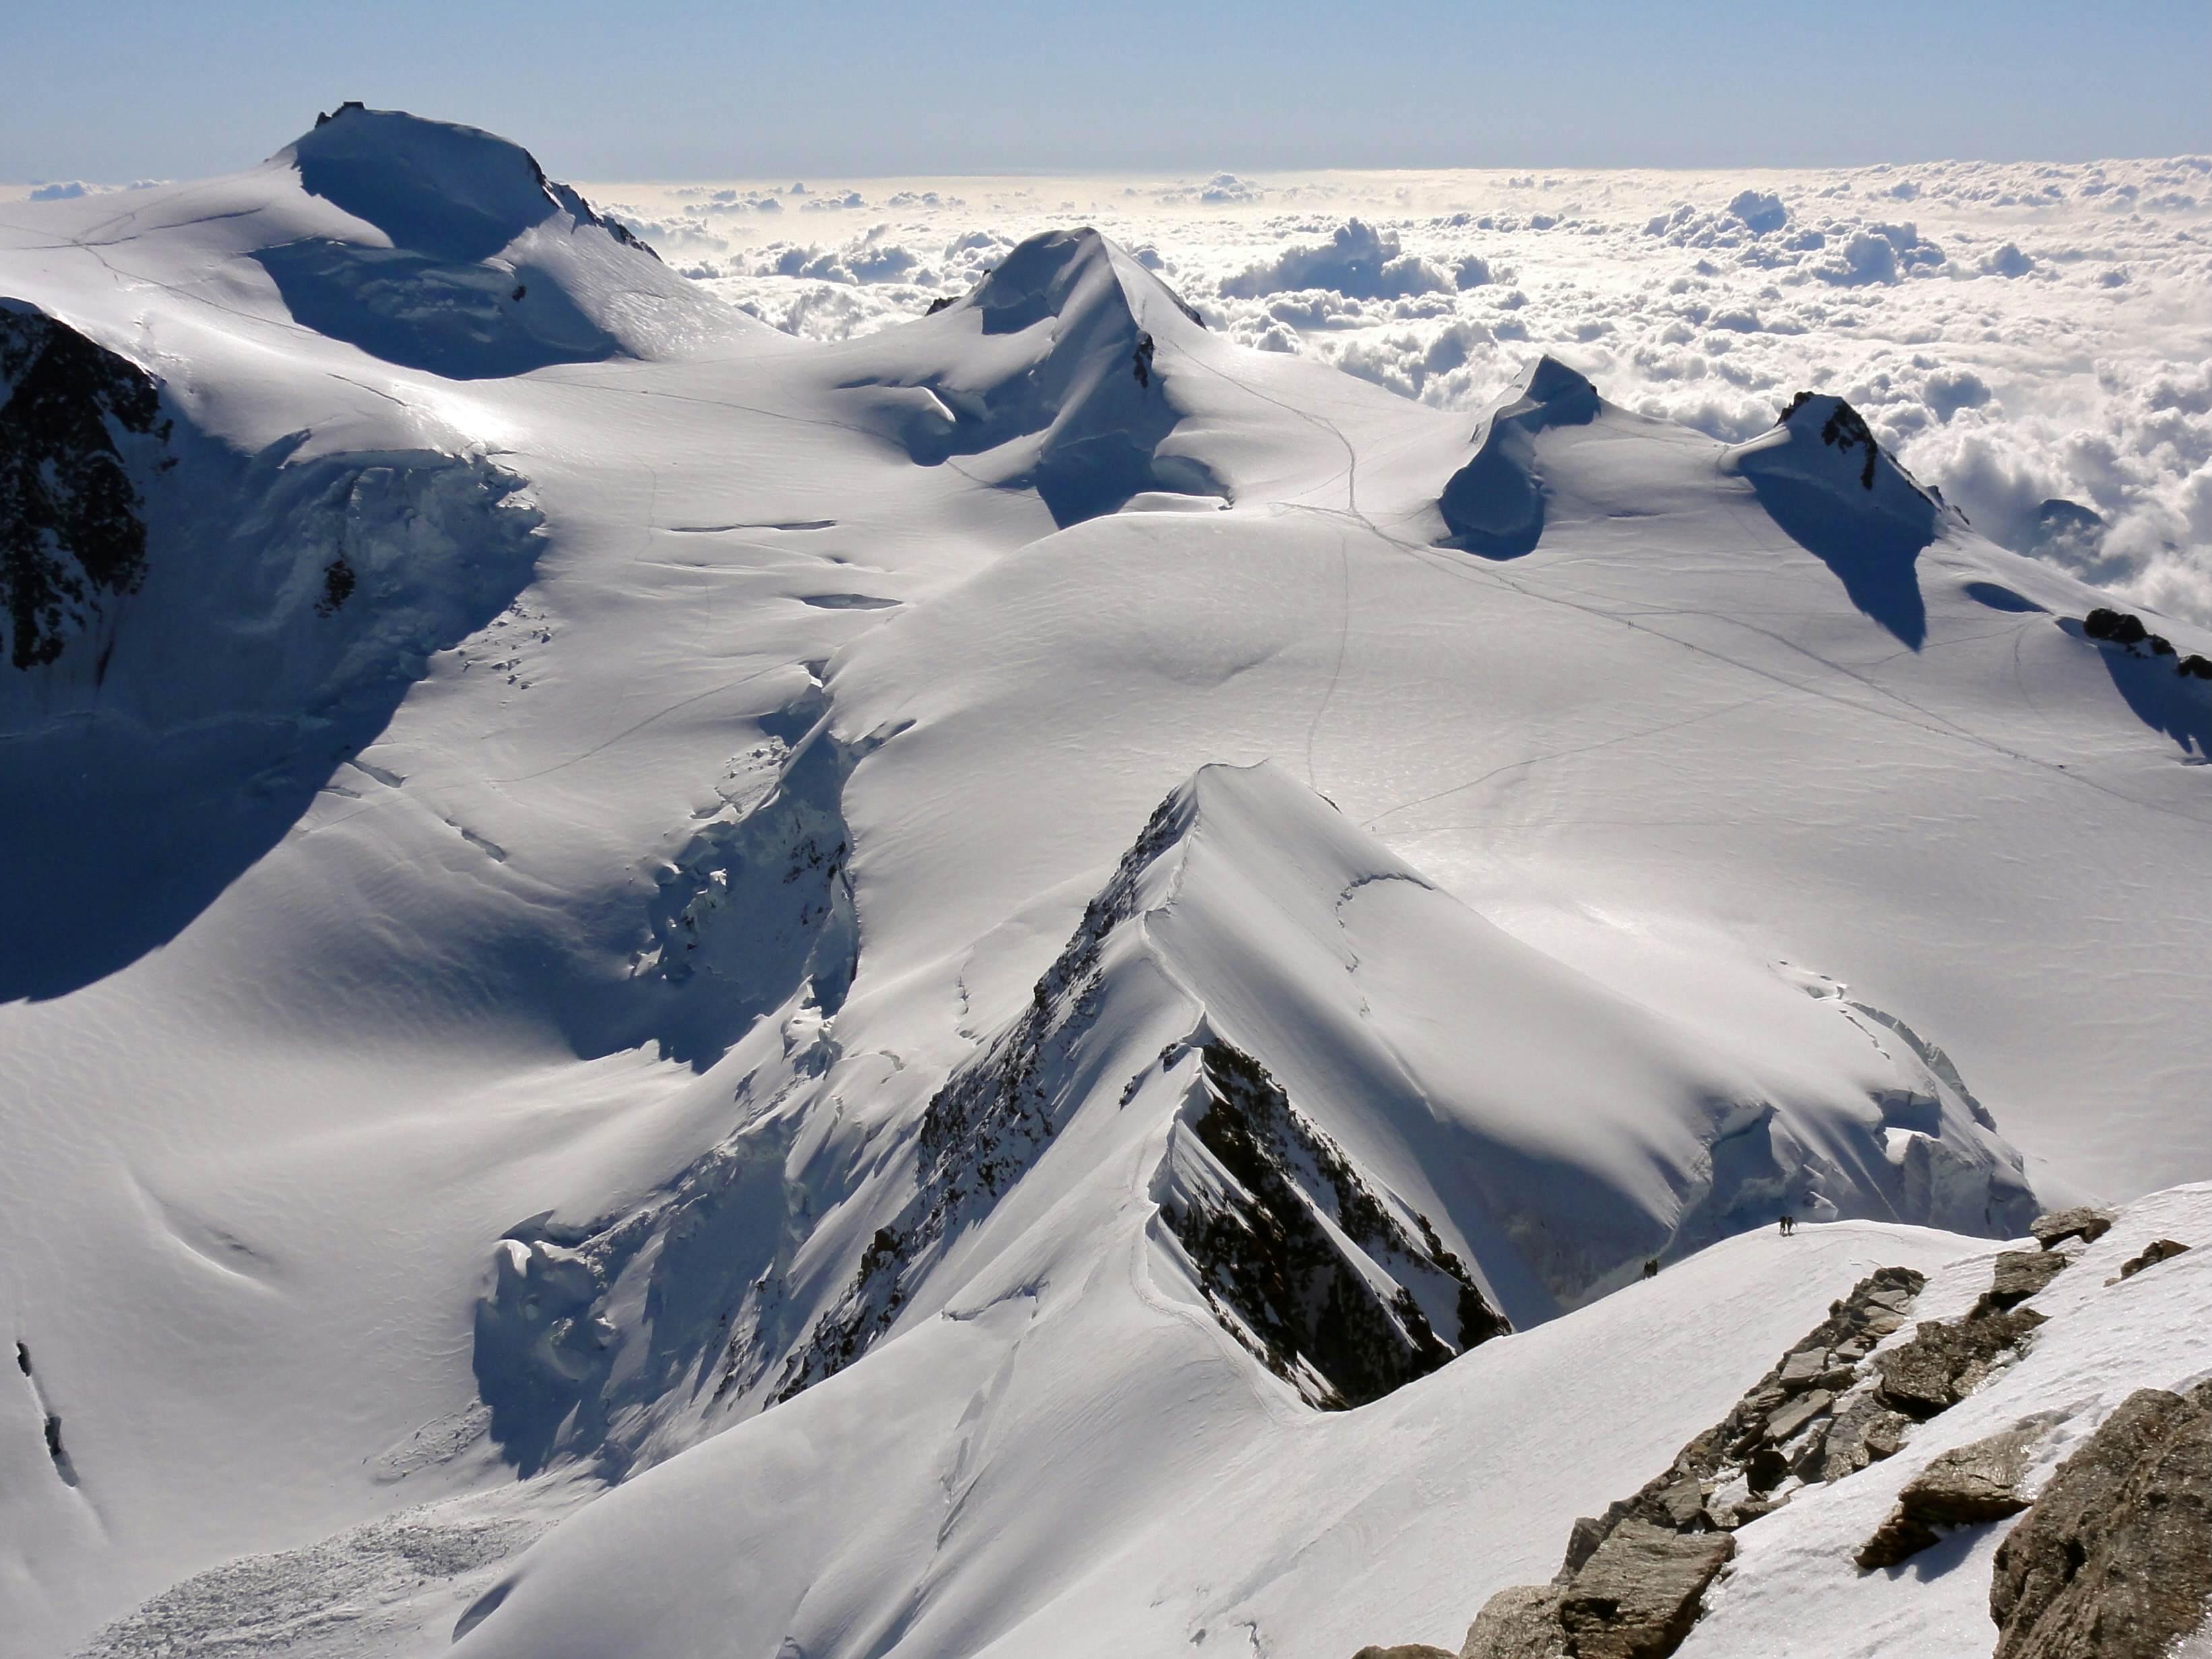 Die klassische Ansicht: Der schnittige Grat zum Liskamm Ostgipfel, dann die zahlreichen Gipfel des Monte Rosa und dahinter die unendliche Po-Ebene